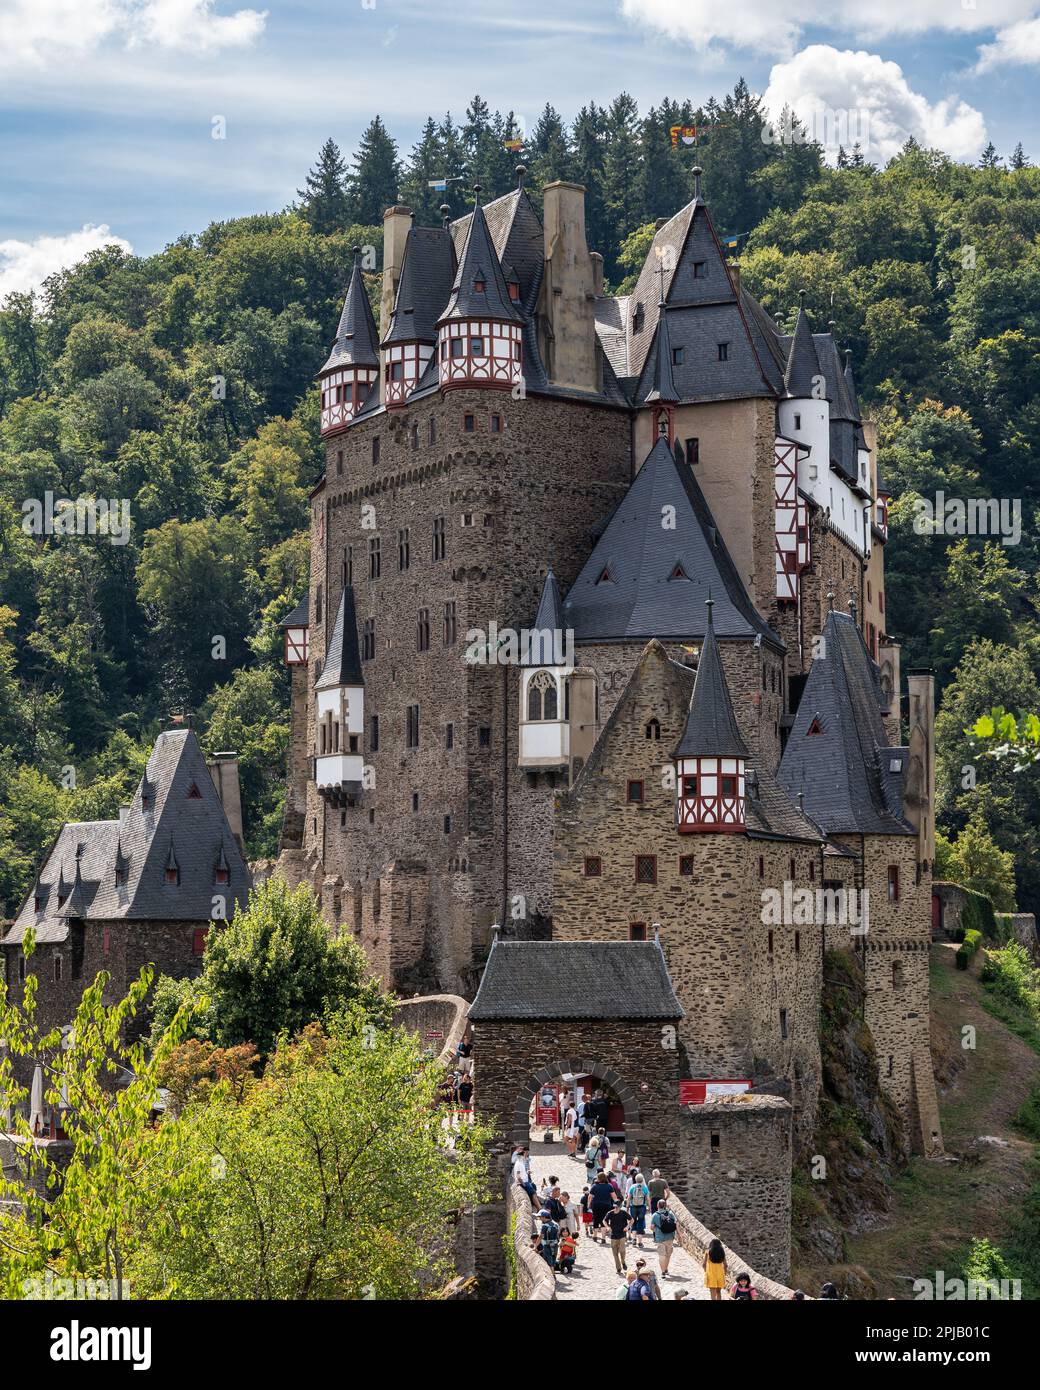 Blick auf das Eltzer Schloss (Burg Eltz), ein berühmtes Touristendenkmal in der Moselregion und eines der schönsten Schlösser Deutschlands Stockfoto